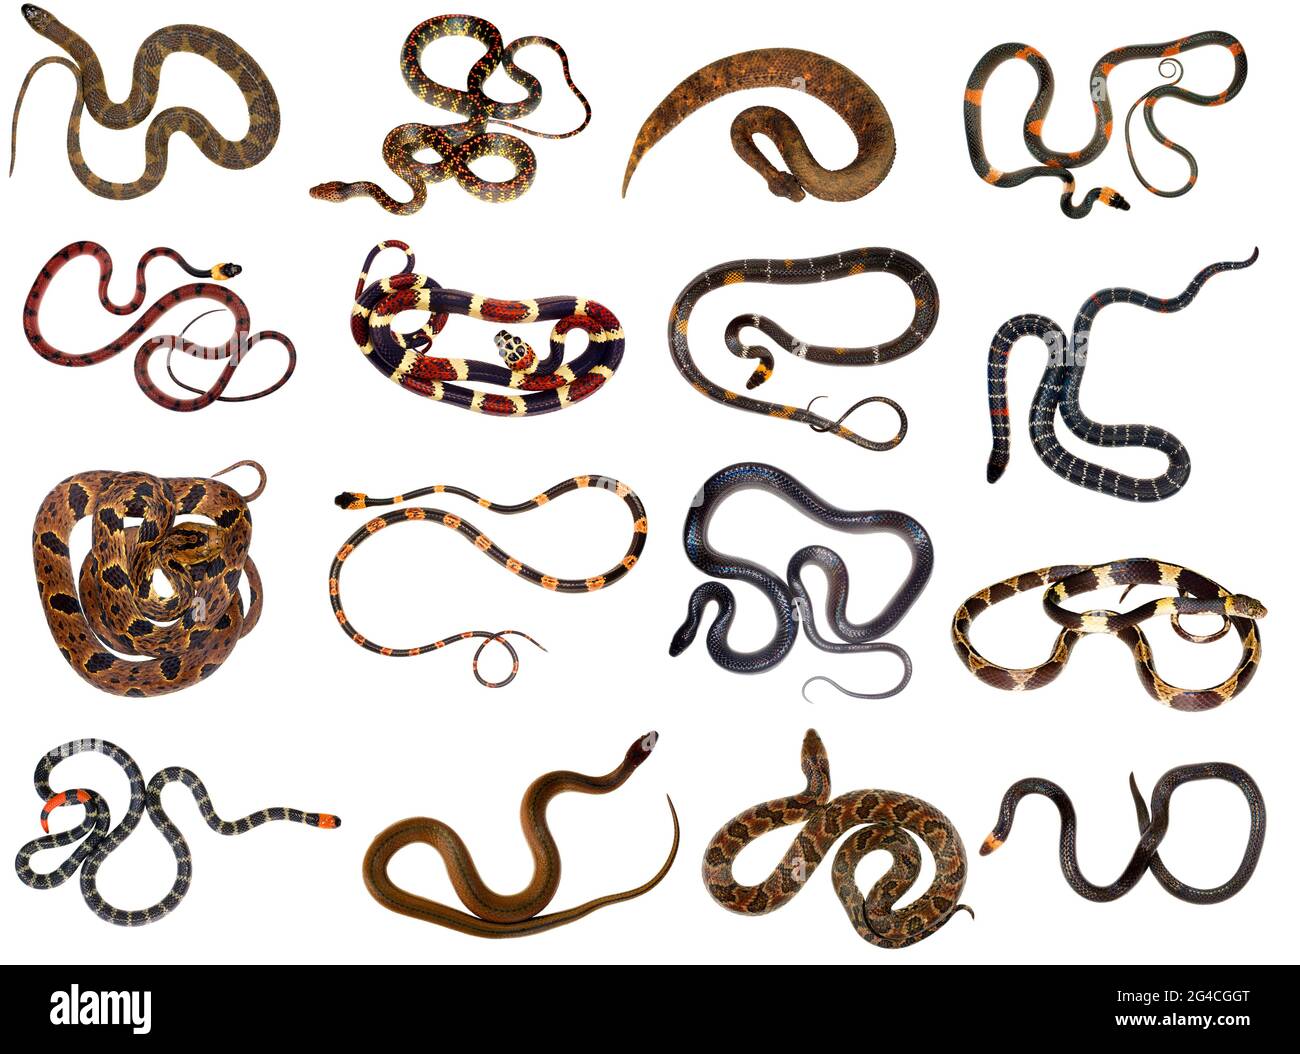 Sammlung von Schlangen aus dem Amazonas-Regenwald Stockfoto